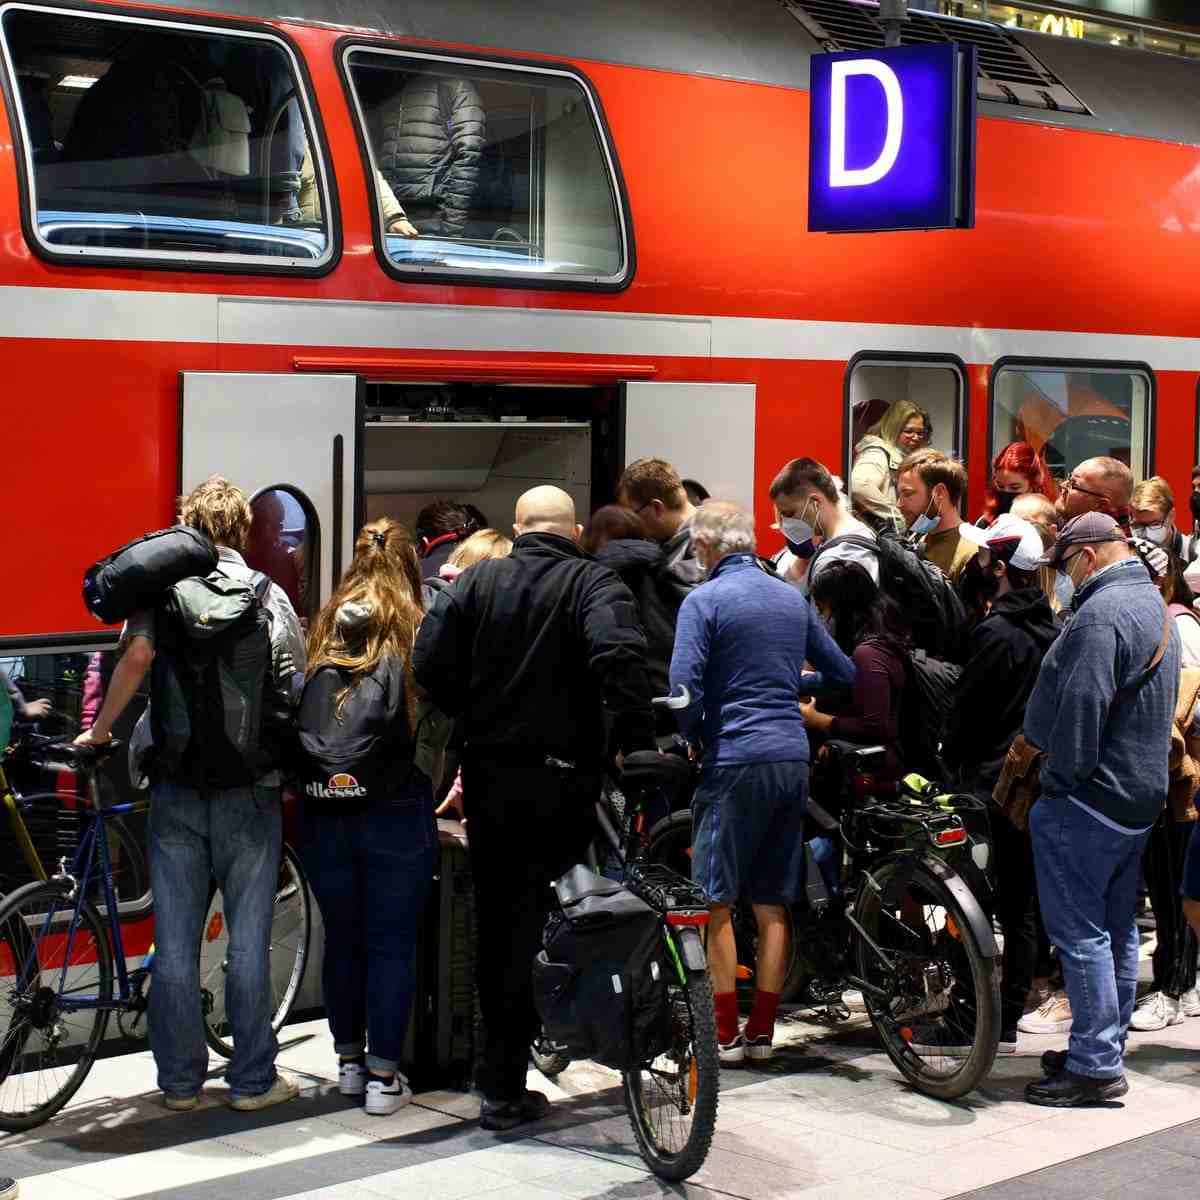 Transports publics à bas prix : l'Allemagne va pérenniser la mesure